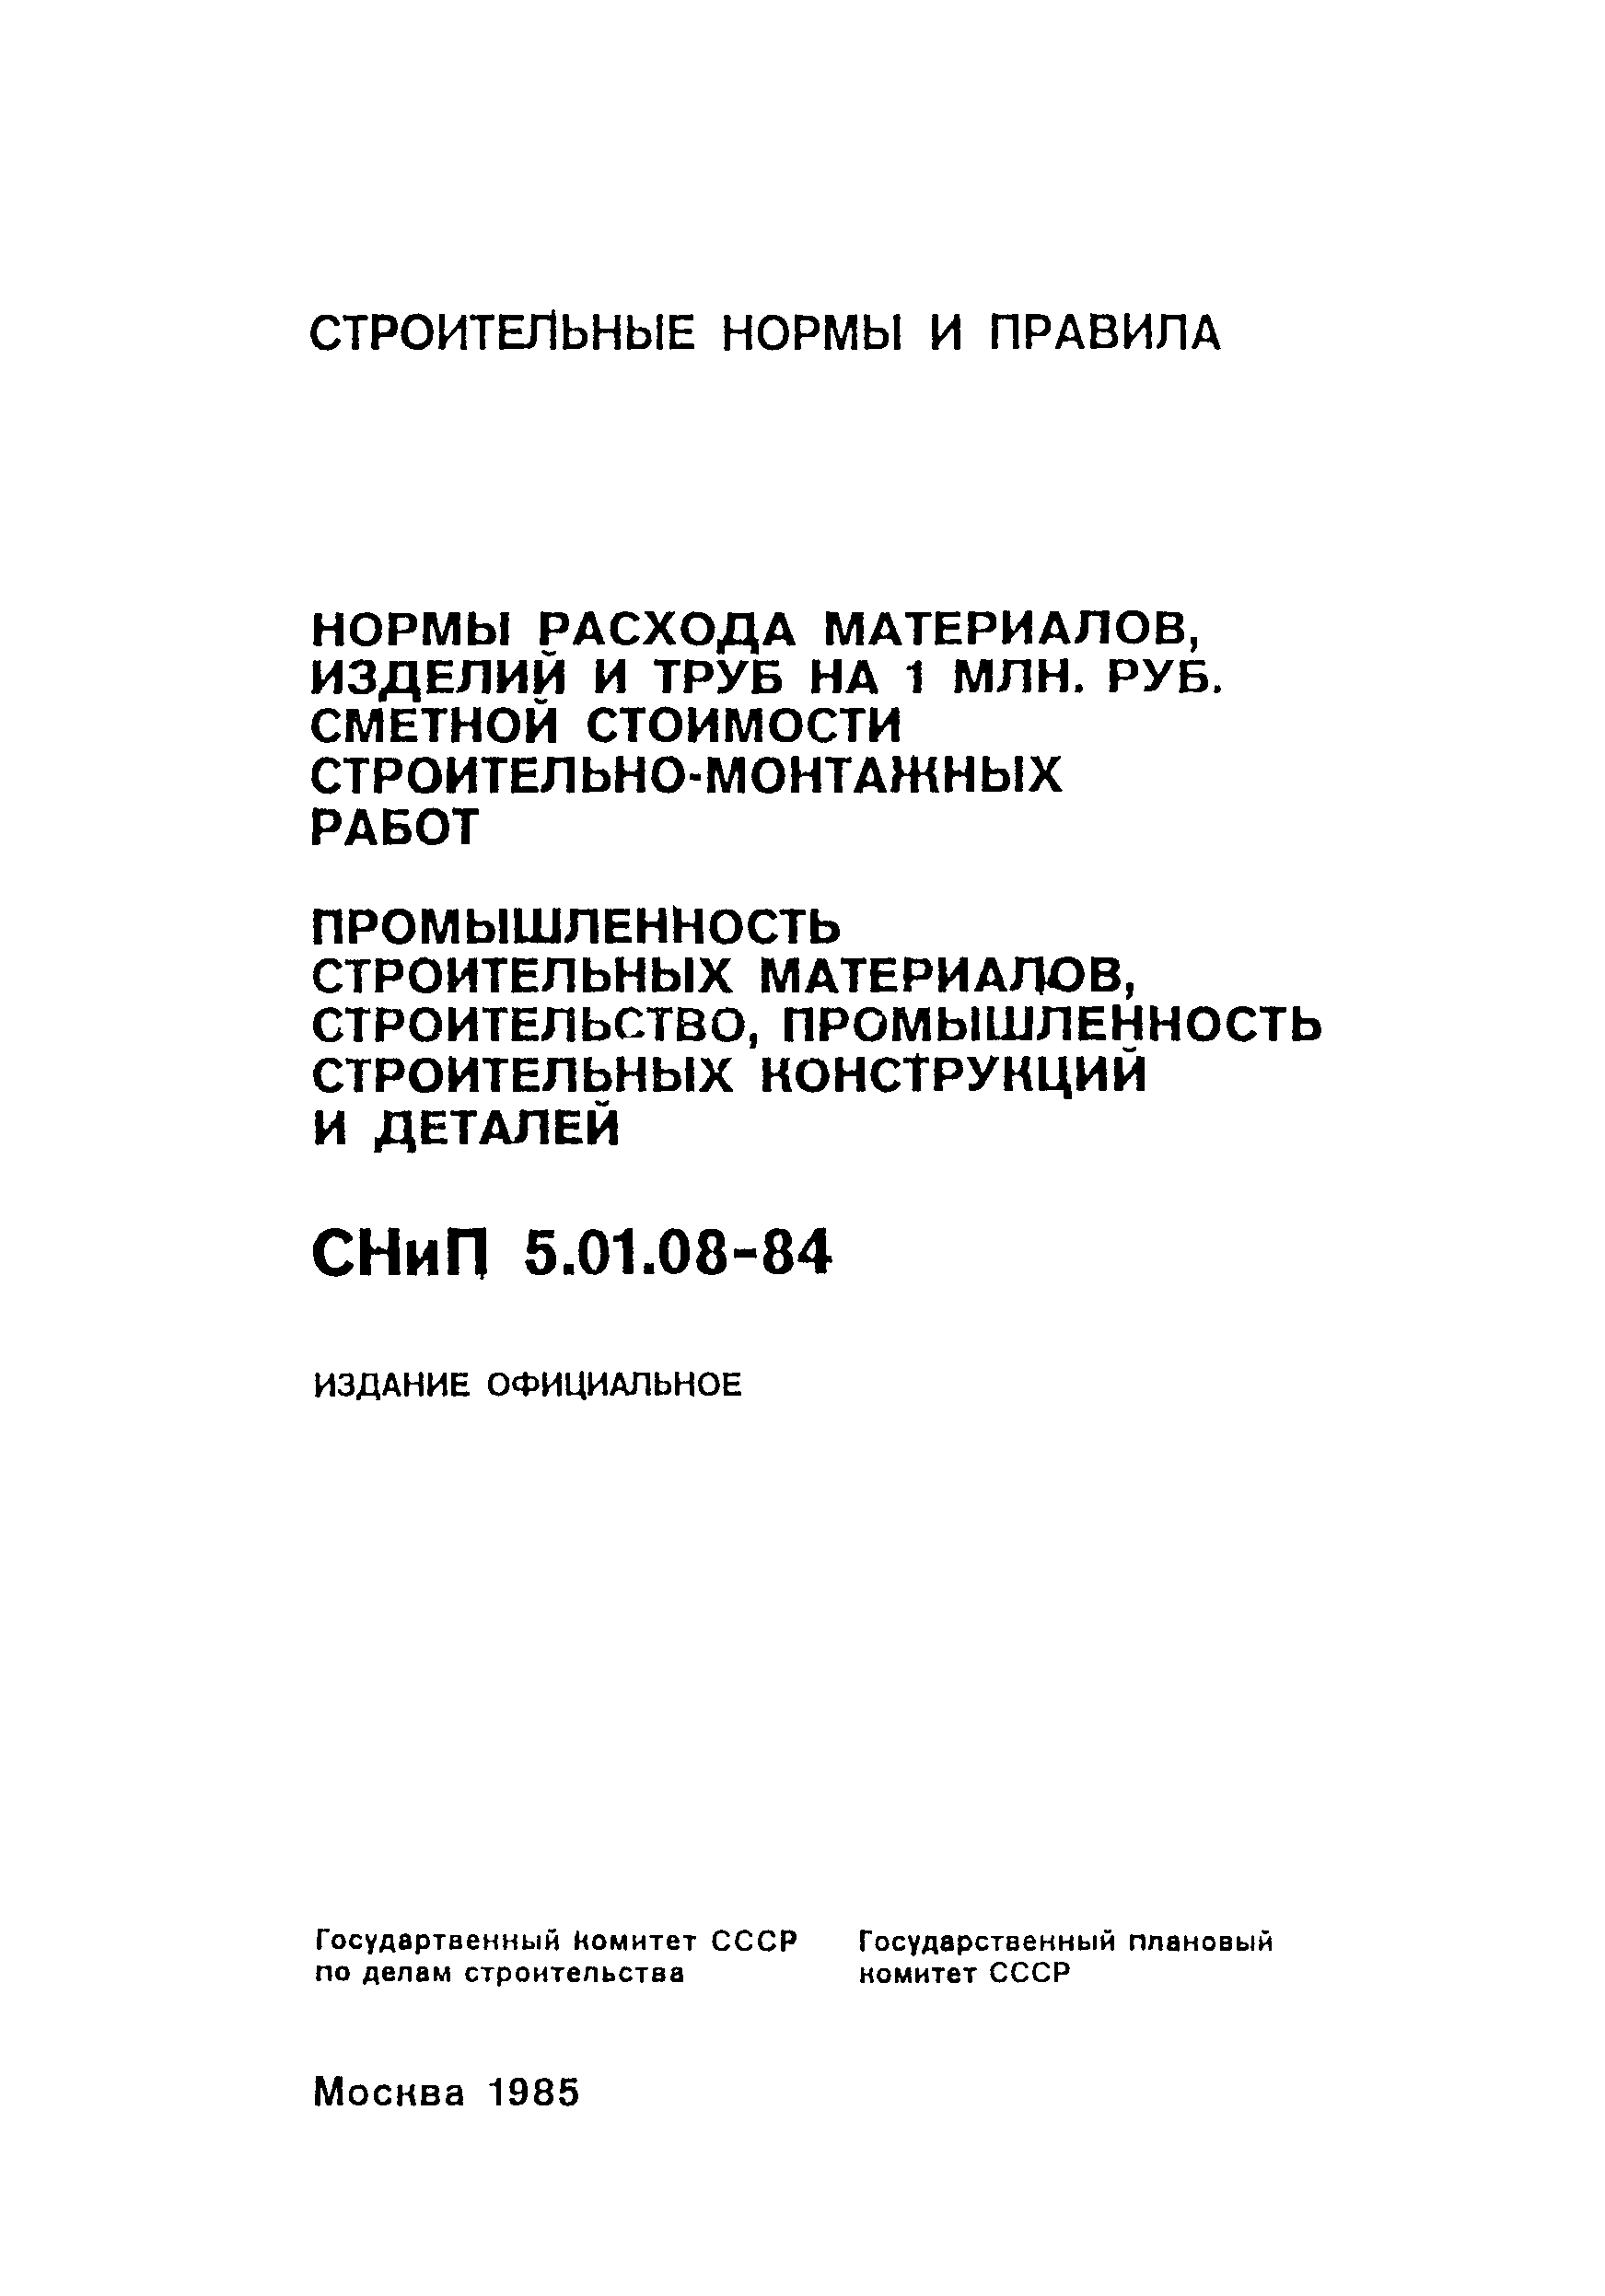 СНиП 5.01.08-84